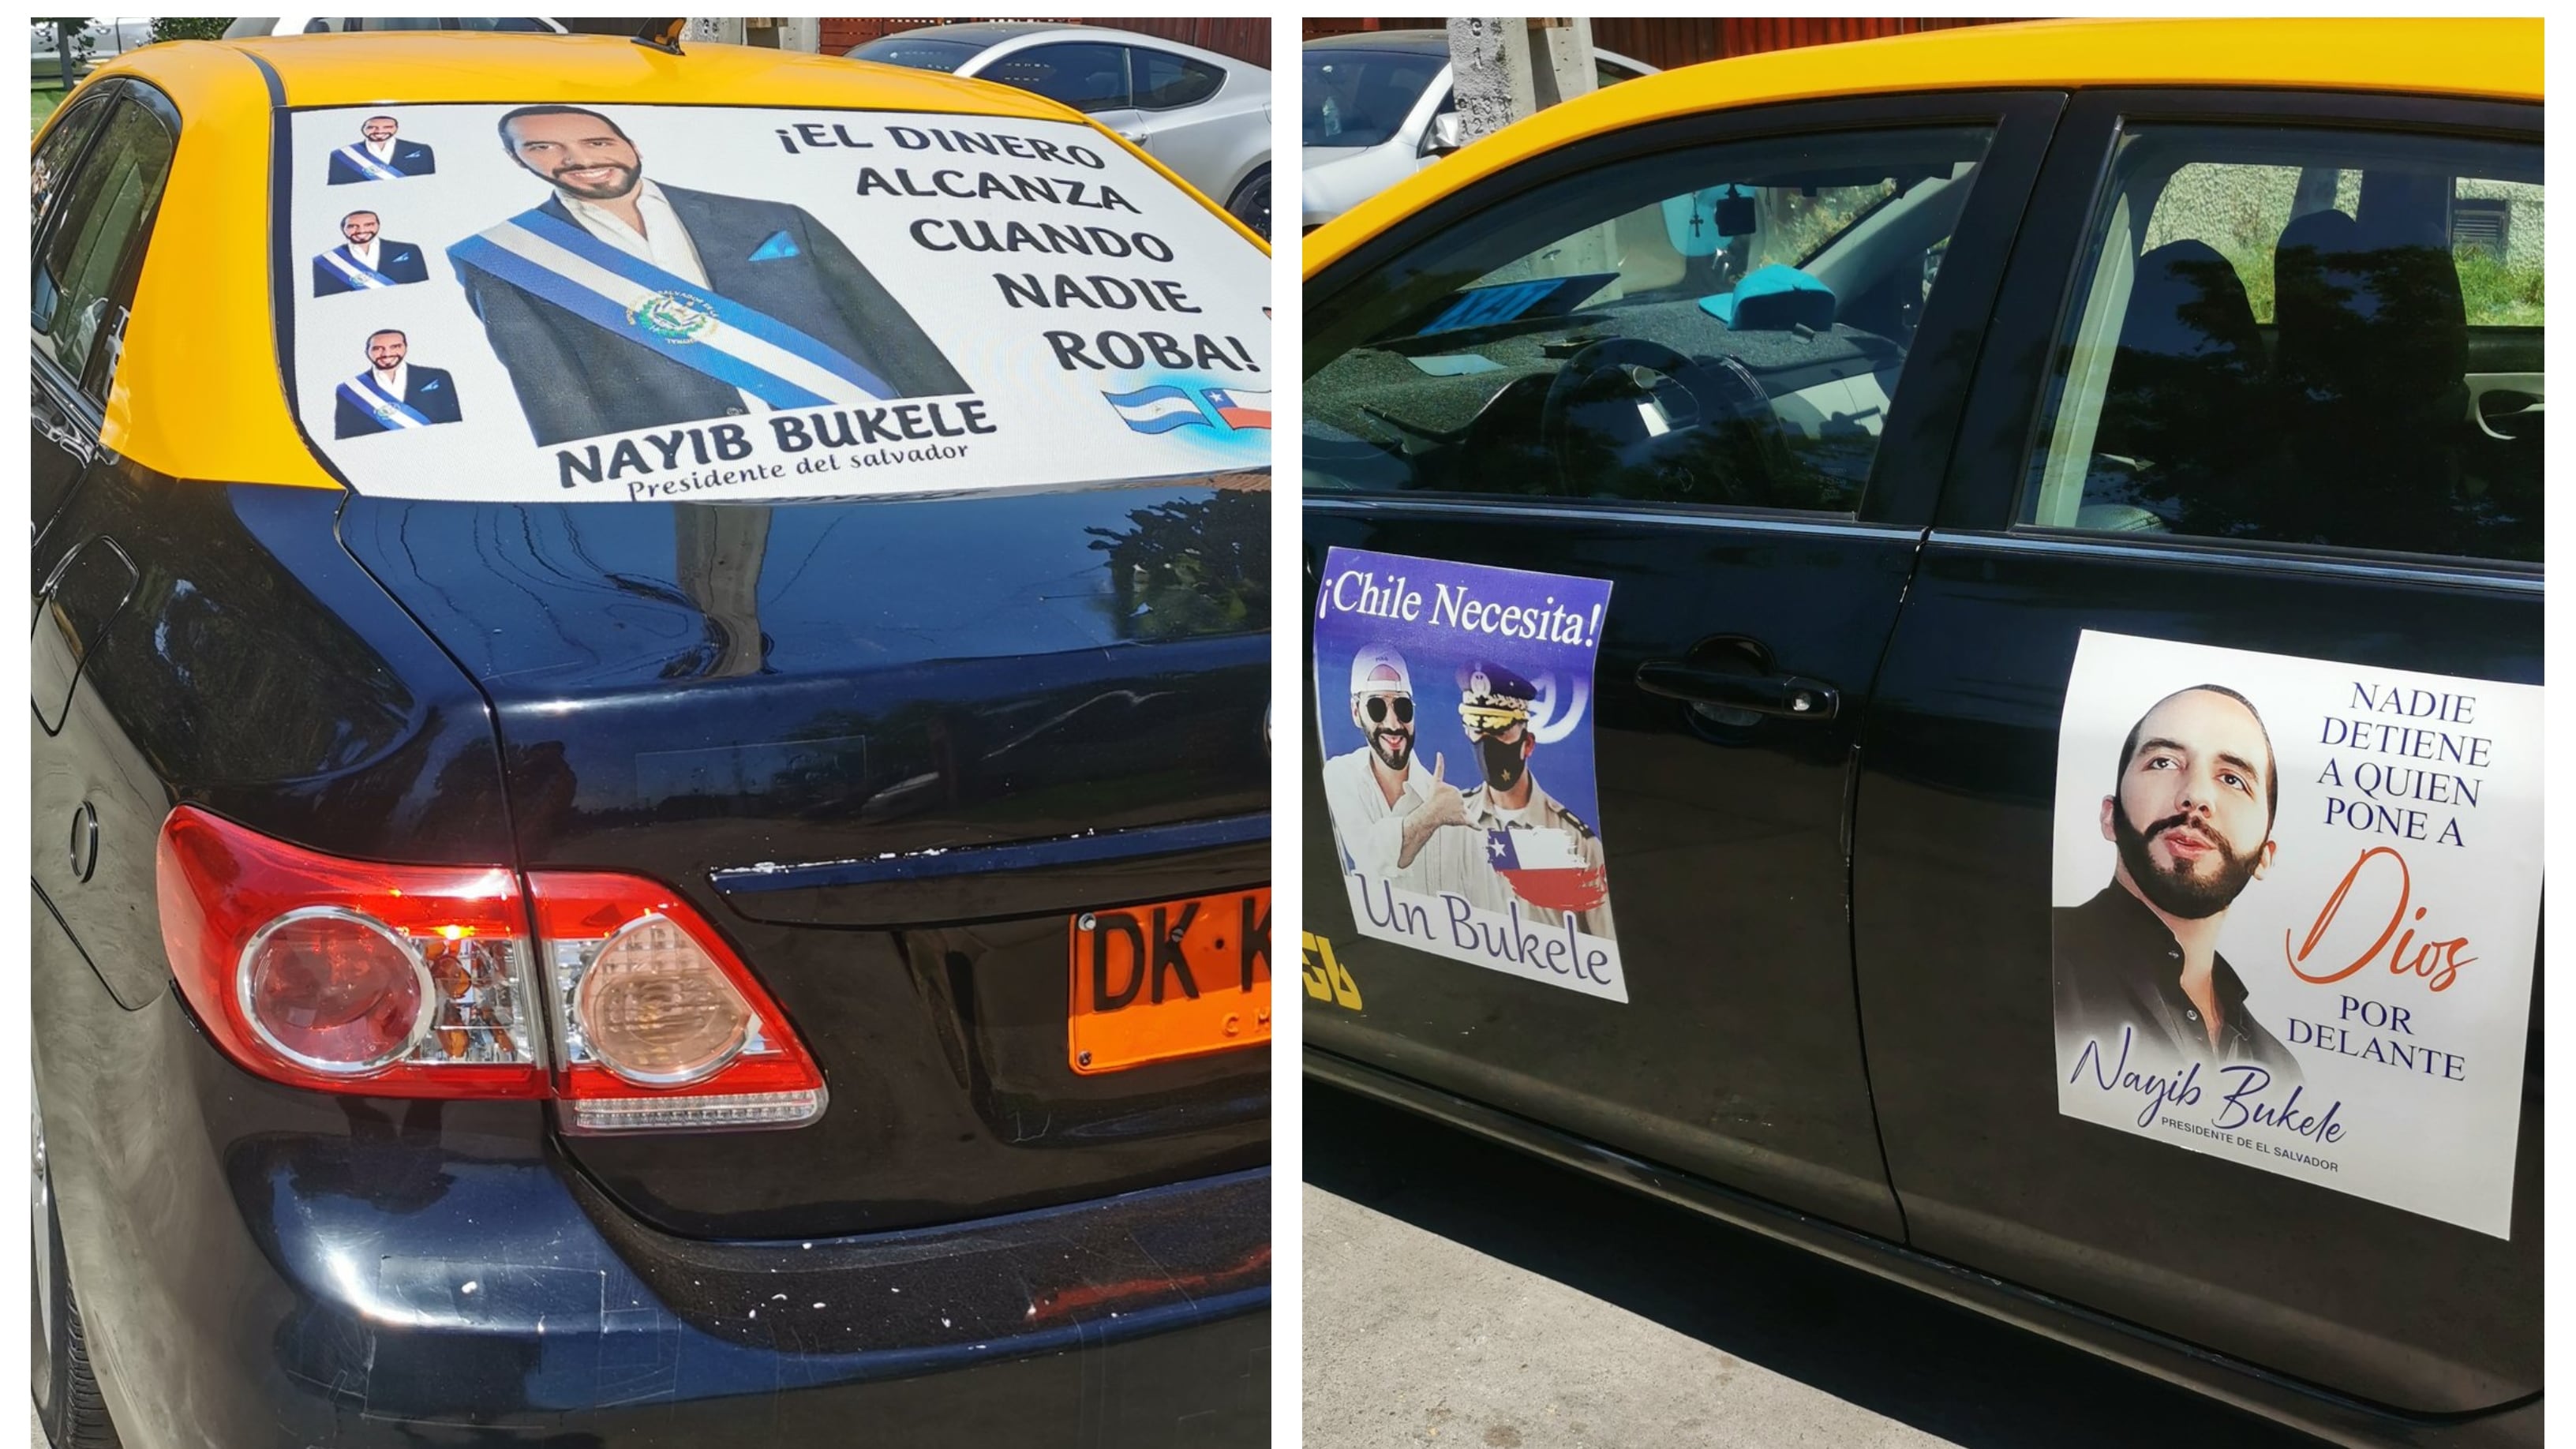 El taxi se hizo viral gracias a las fotografías de Nayib Bukele.